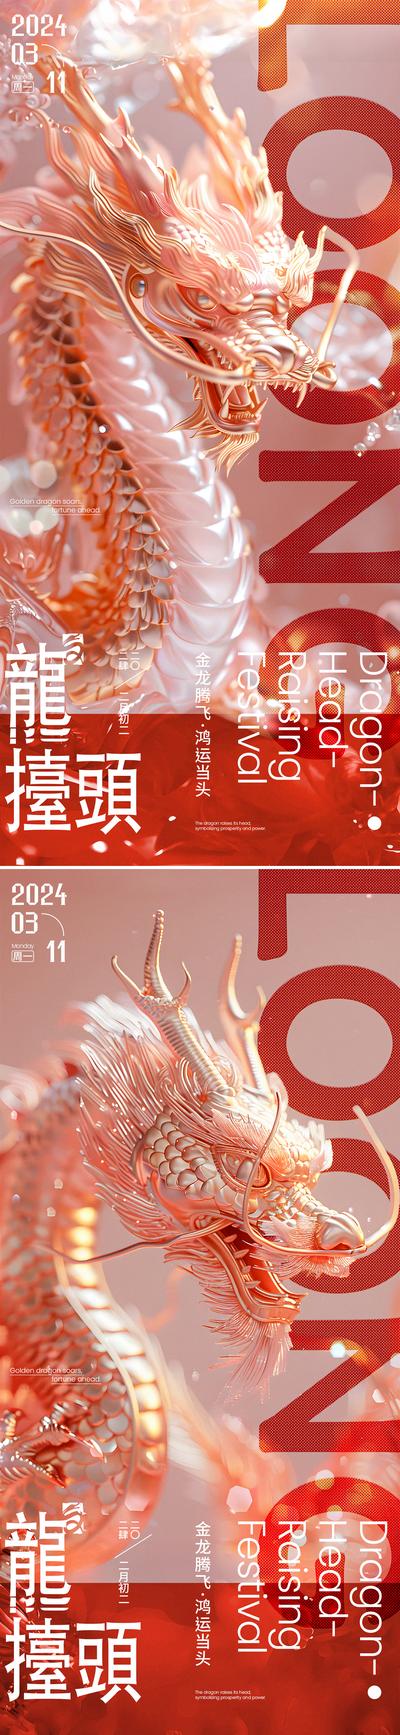 南门网 广告 海报 节日 龙抬头 质感 系列 中国传统节日 二月初二 龙 金龙 鸿运当头 龙腾 3D C4D 系列